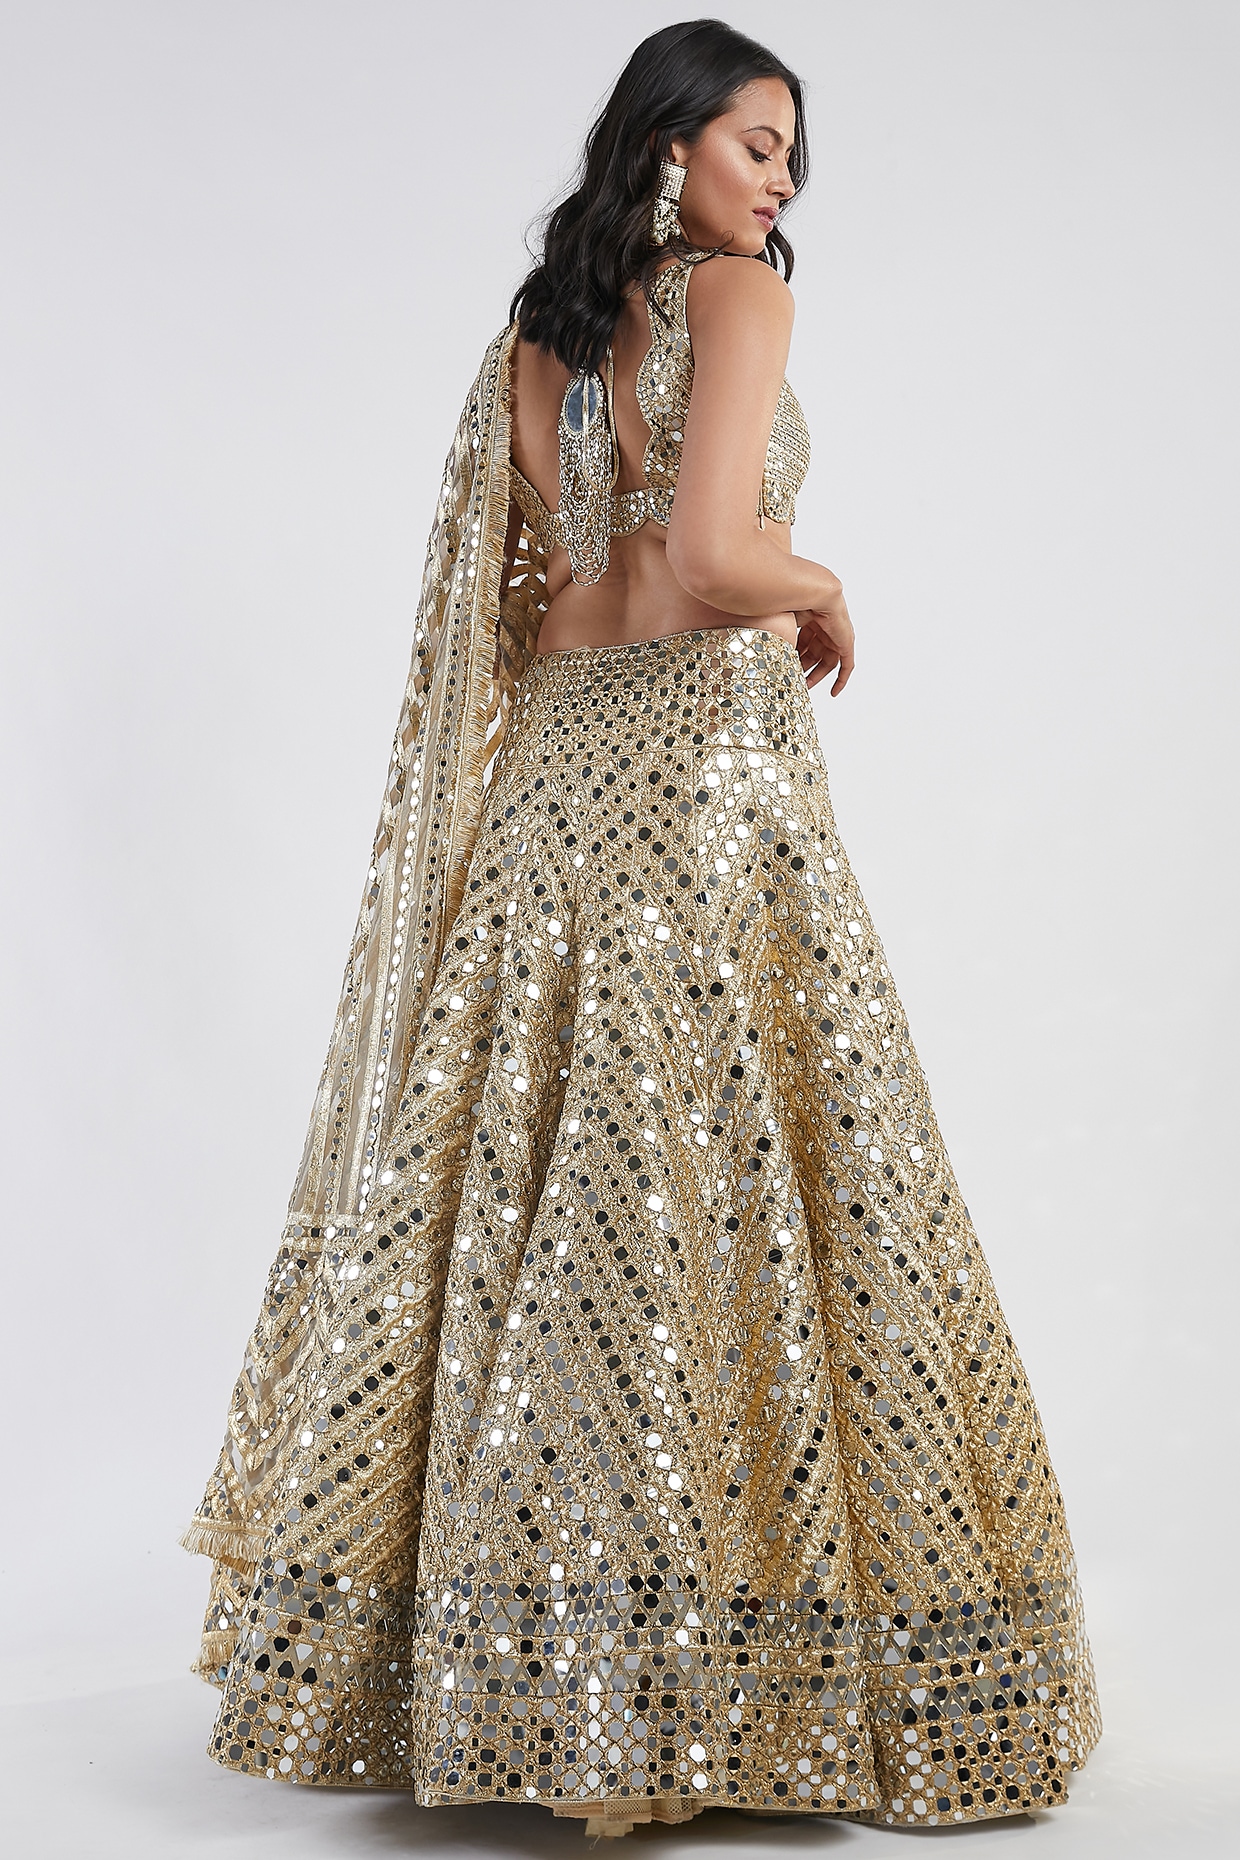 Abhinav Mishra Dresses Online, Abhinav Mishra Collections Dubai – Vesimi